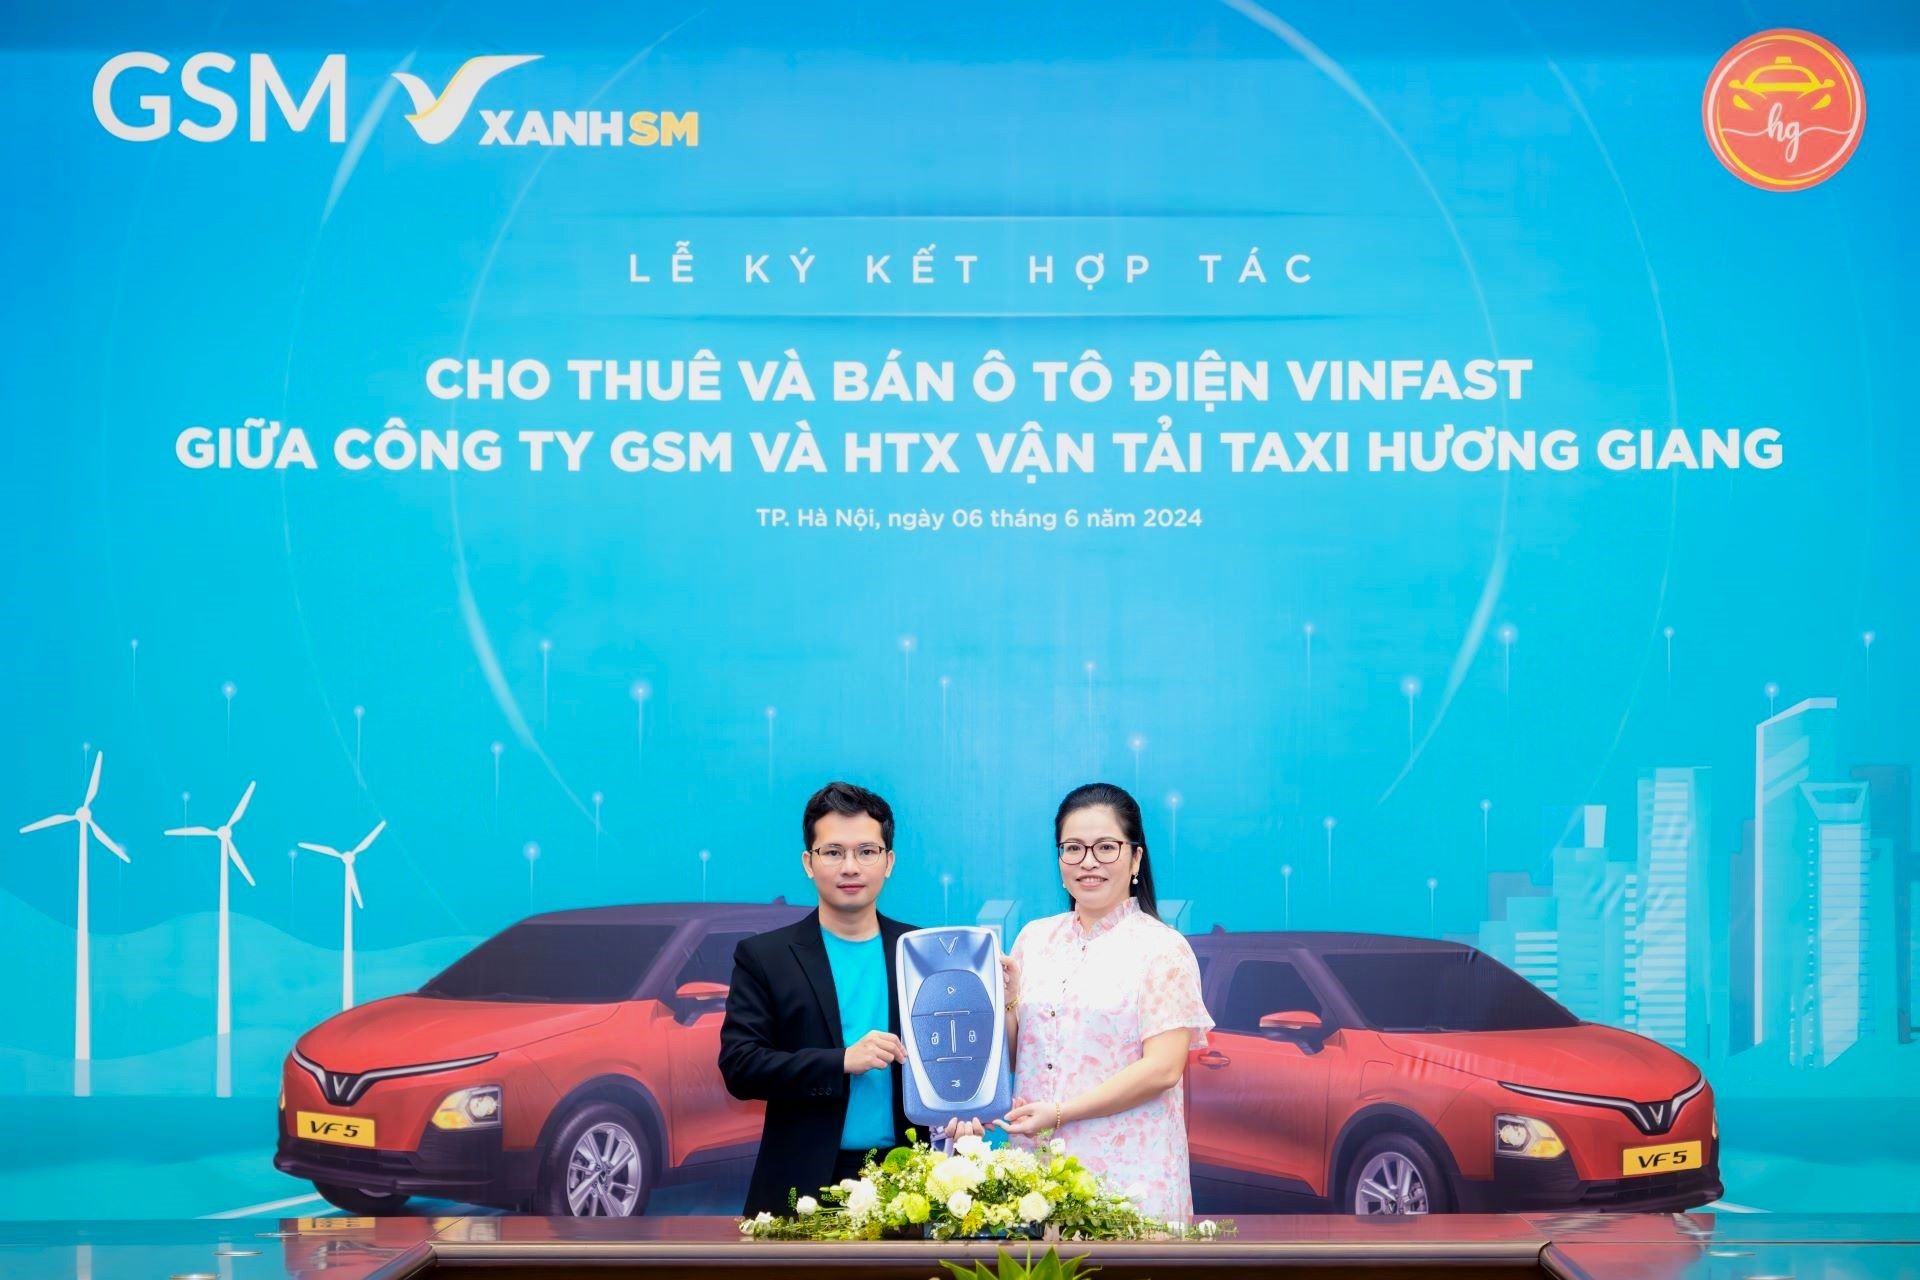 Ông Nguyễn Văn Thanh, Tổng Giám đốc GSM Toàn cầu và bà Nguyễn Thị Thanh Thùy, Giám đốc HTX Vận tải Taxi Hương Giang tại lễ ký kết. Ảnh: GSM